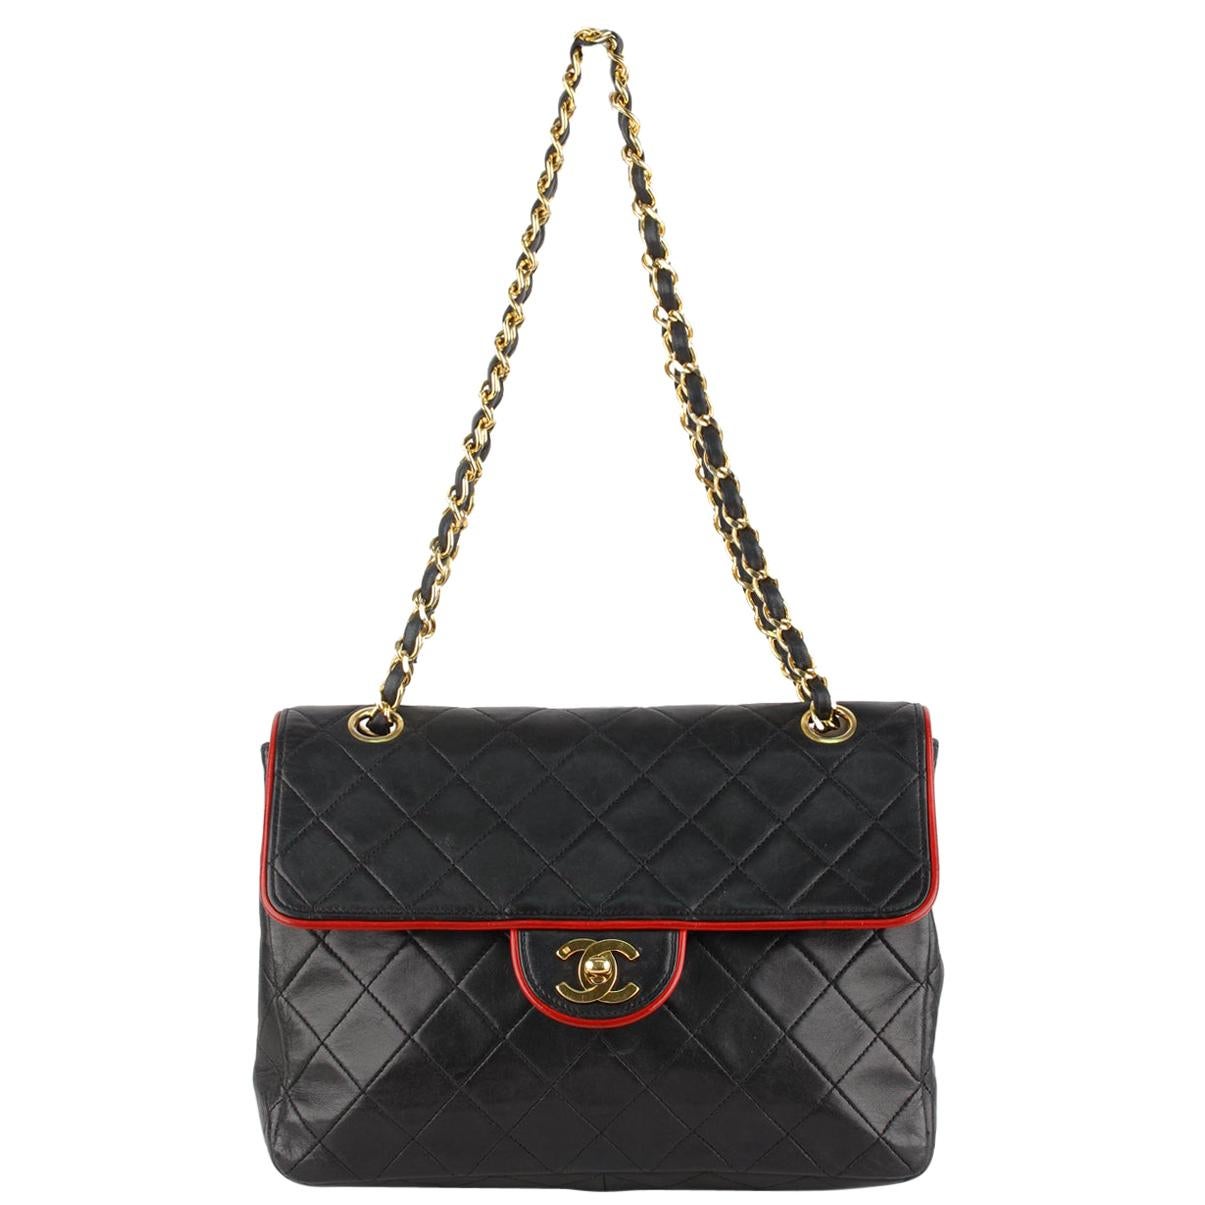 Chanel Vintage Black Quilted Leather Shoulder Bag with Contrast Trim